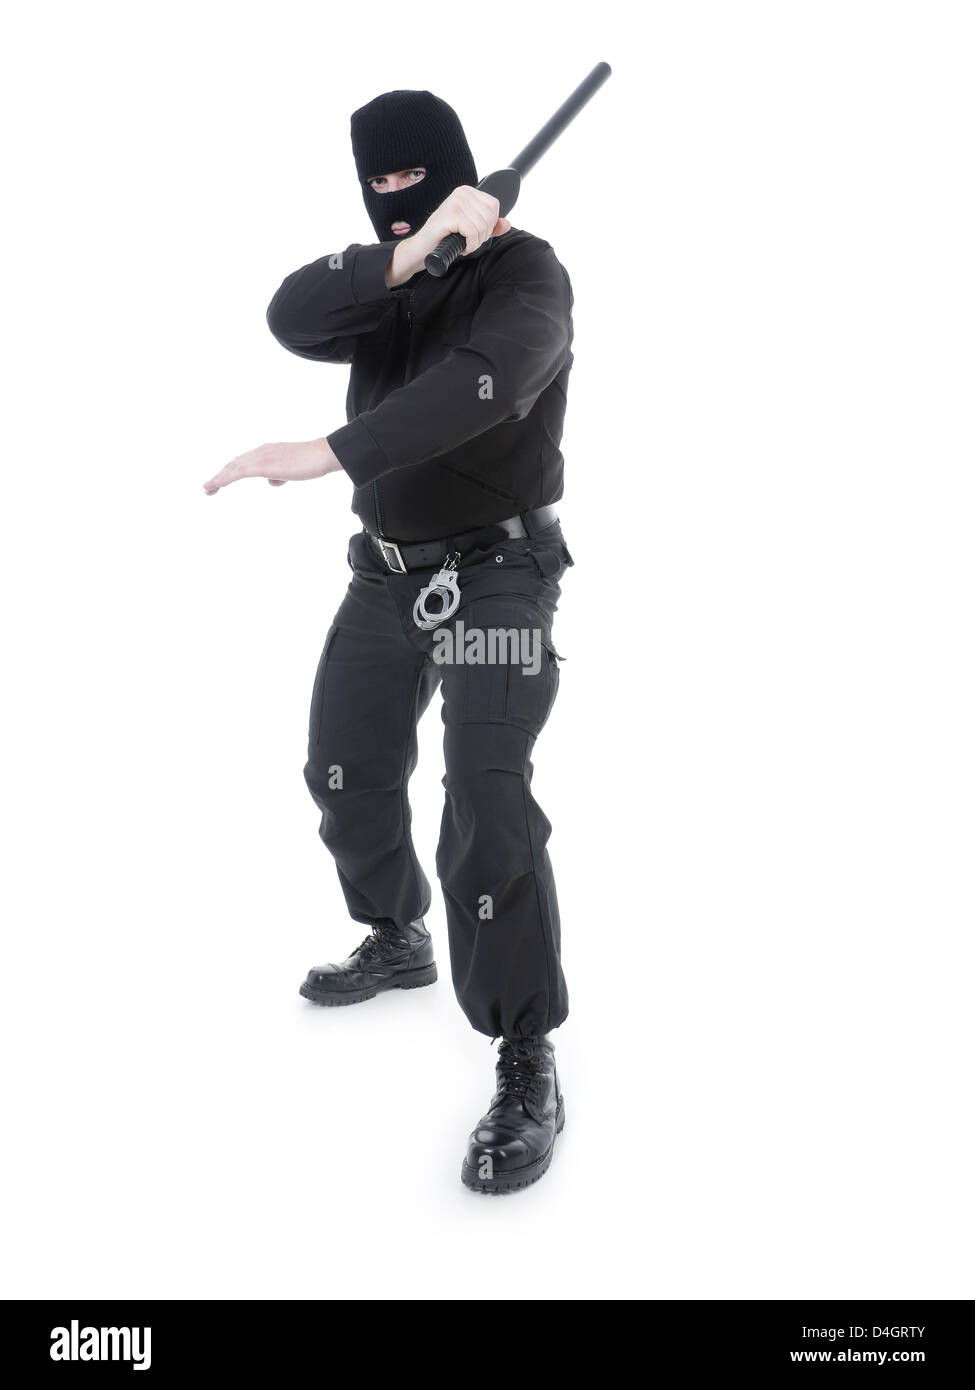 Polizia anti-terrorismo ragazzo indossa il nero uniforme e maschera nera tenendo saldamente police club in una mano sollevata in aria Foto Stock